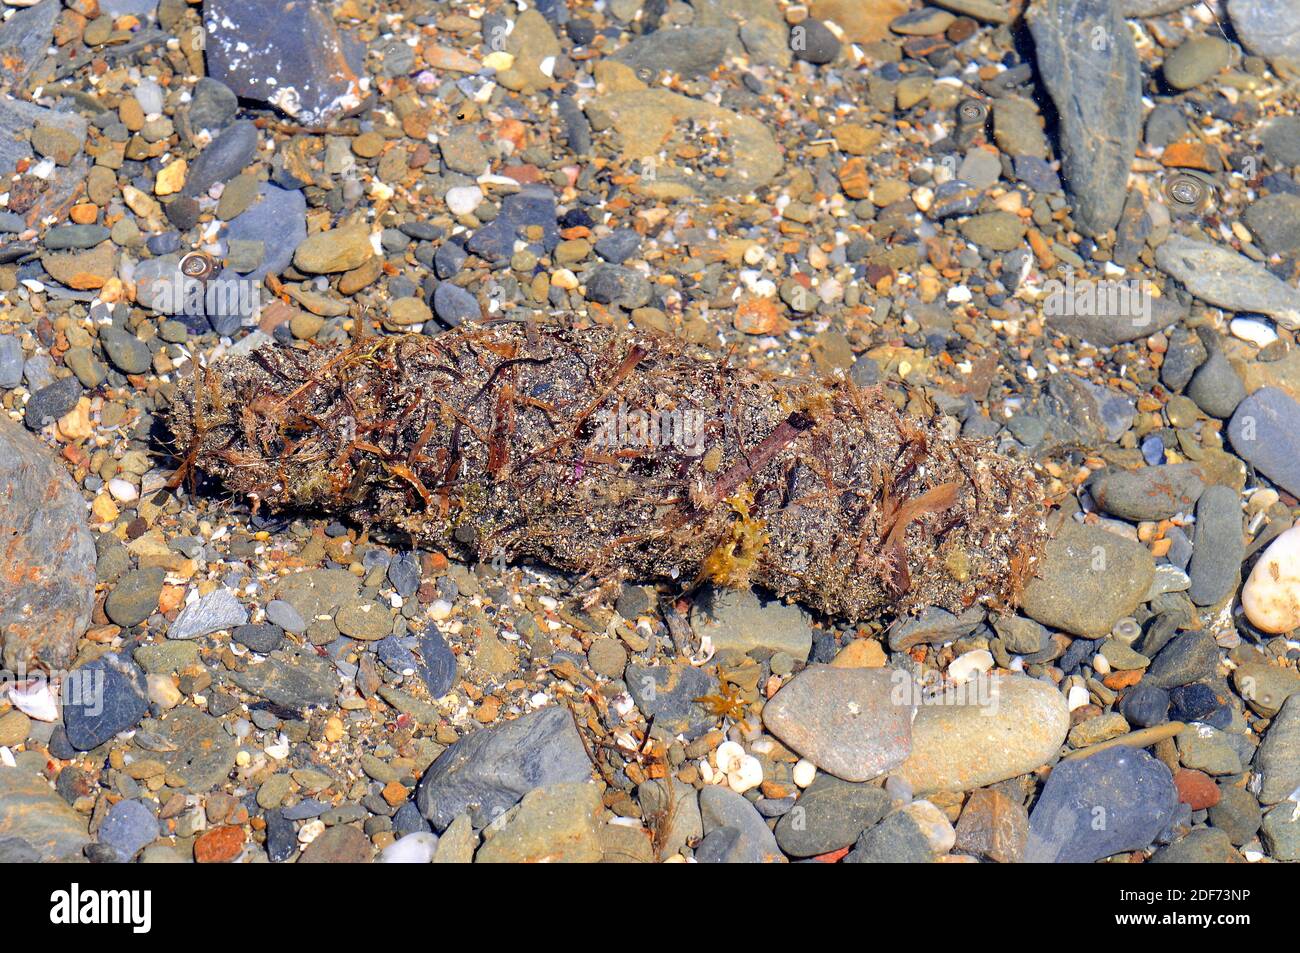 El pepino tubular (Holothuria tubulosa) es una especie de pepino de mar que se alimenta de detritus y plancton. Espécimen críptico cubierto con restos de Foto de stock